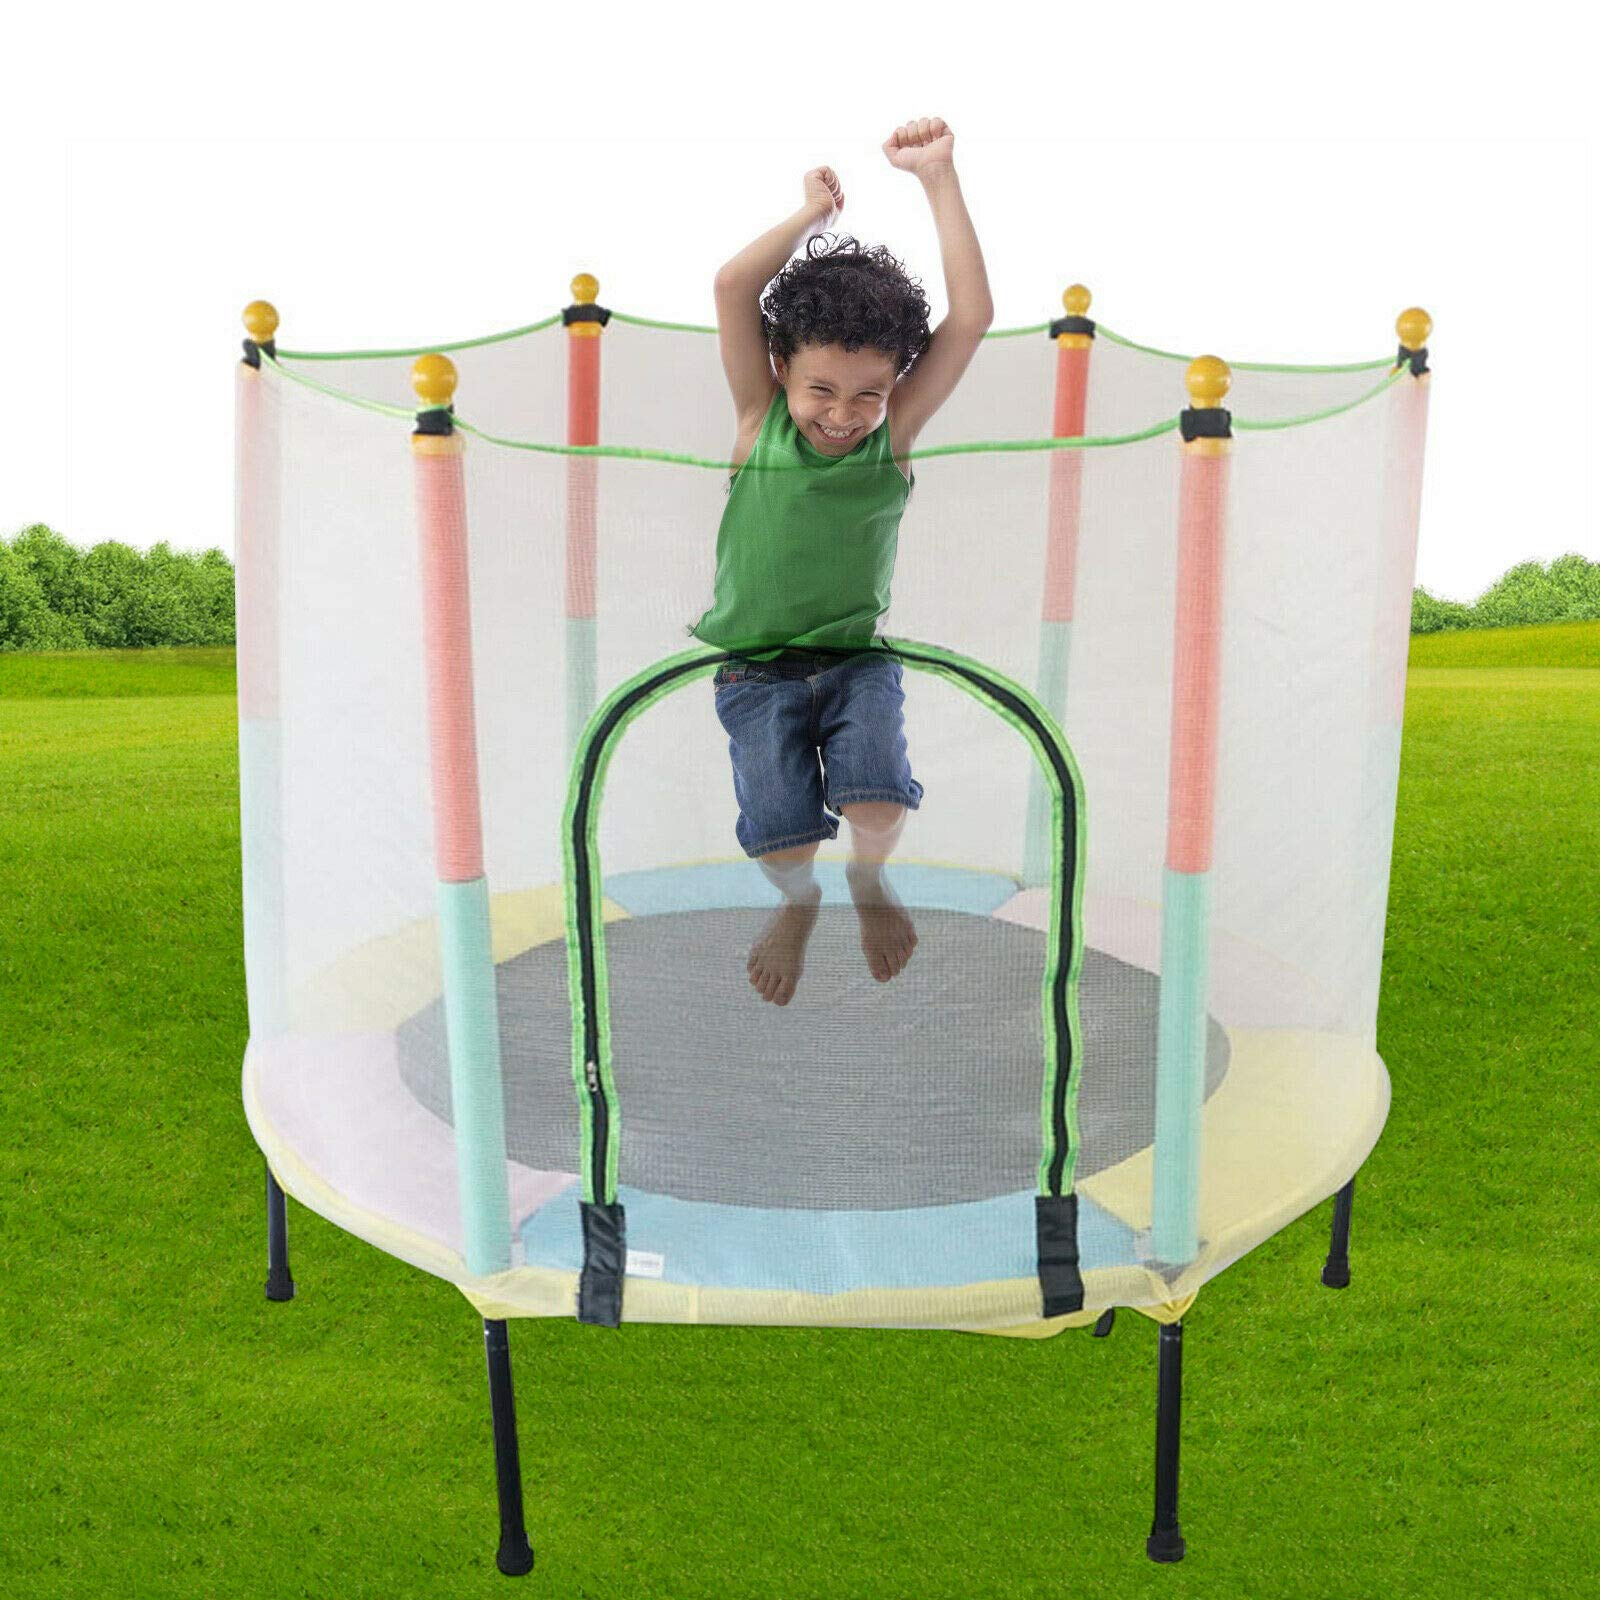 Trampoline de jardin pour enfant de 140 cm avec filet - Pour l'extérieur et l'intérieur - 200 kg - Recommandation : convient pour 2 à 3 enfants